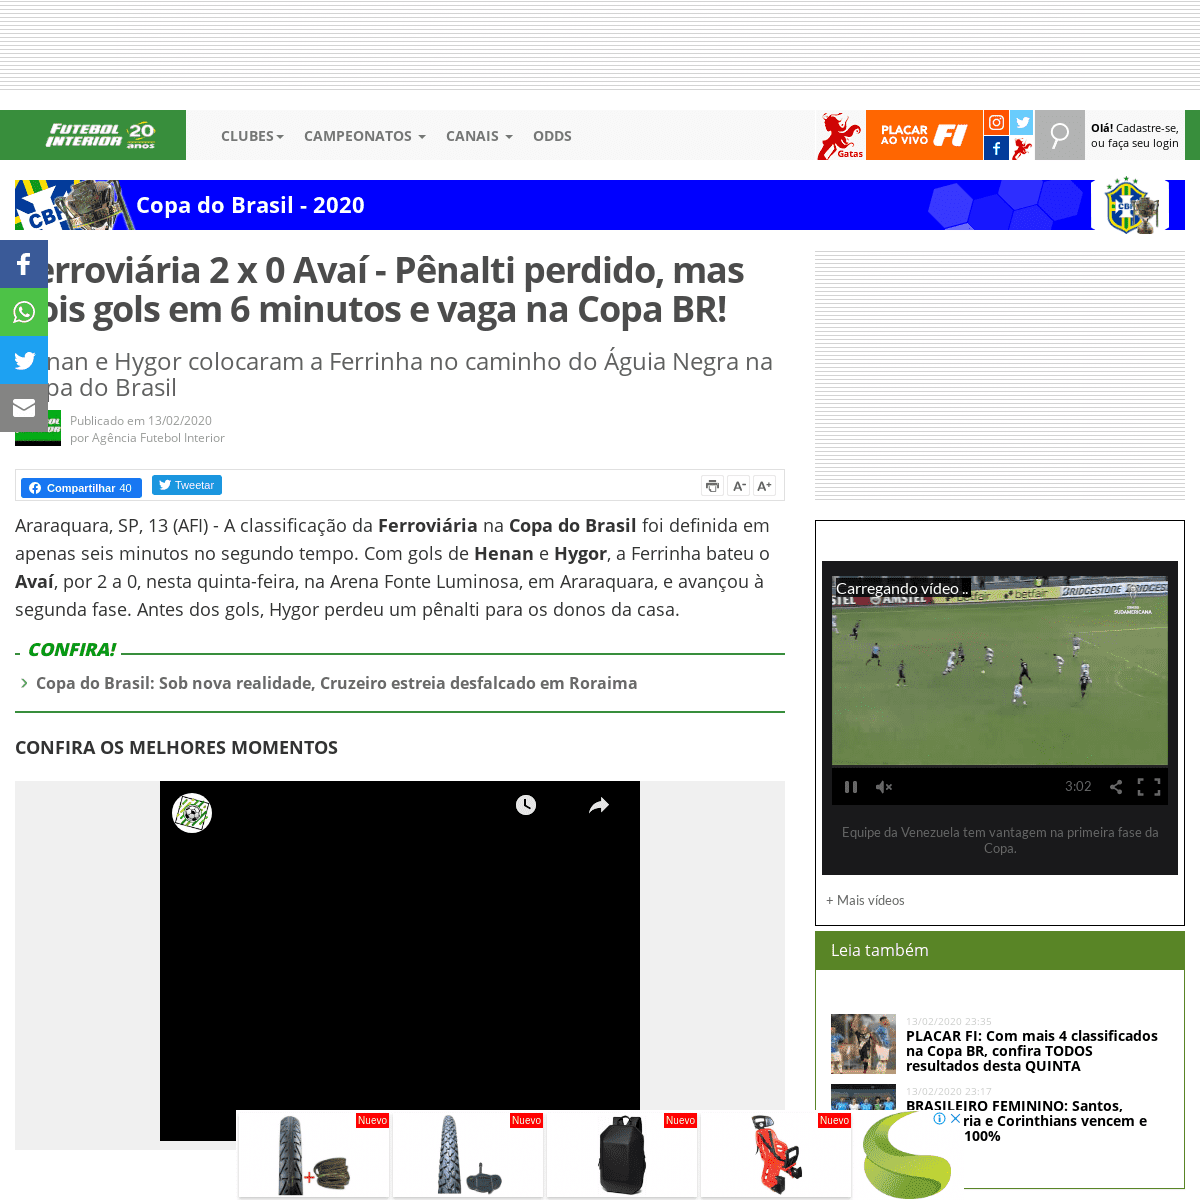 A complete backup of www.futebolinterior.com.br/futebol/Copa-do-Brasil/Unica/2020/noticias/2020-02/ferroviaria-2-x-0-avai-dois-g